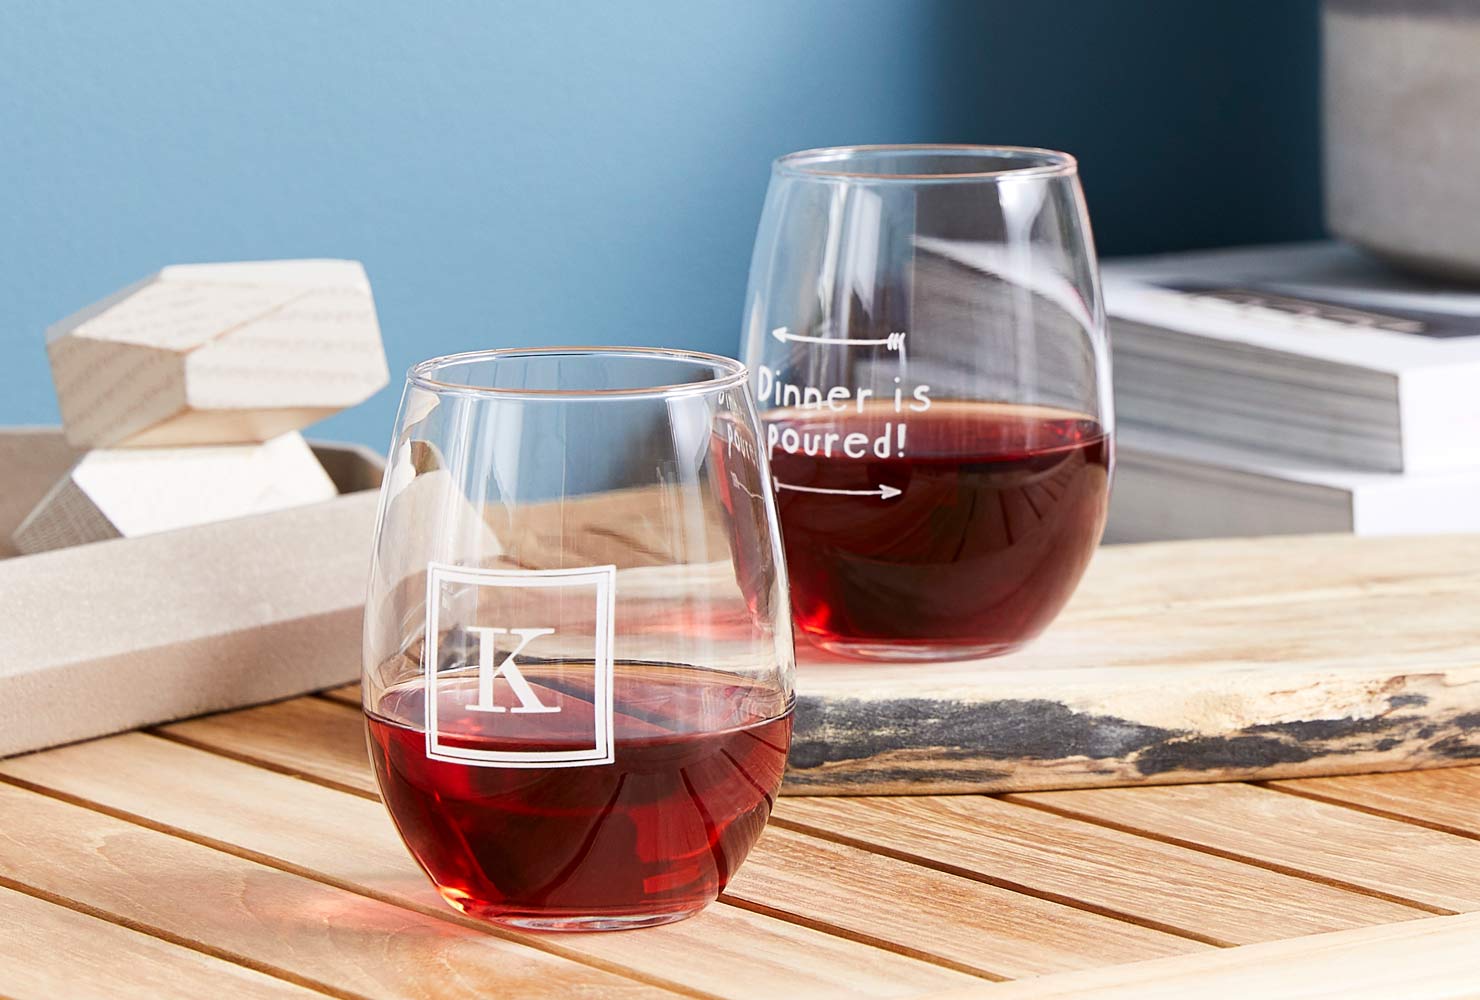 Monogrammed stemless wine glasses.